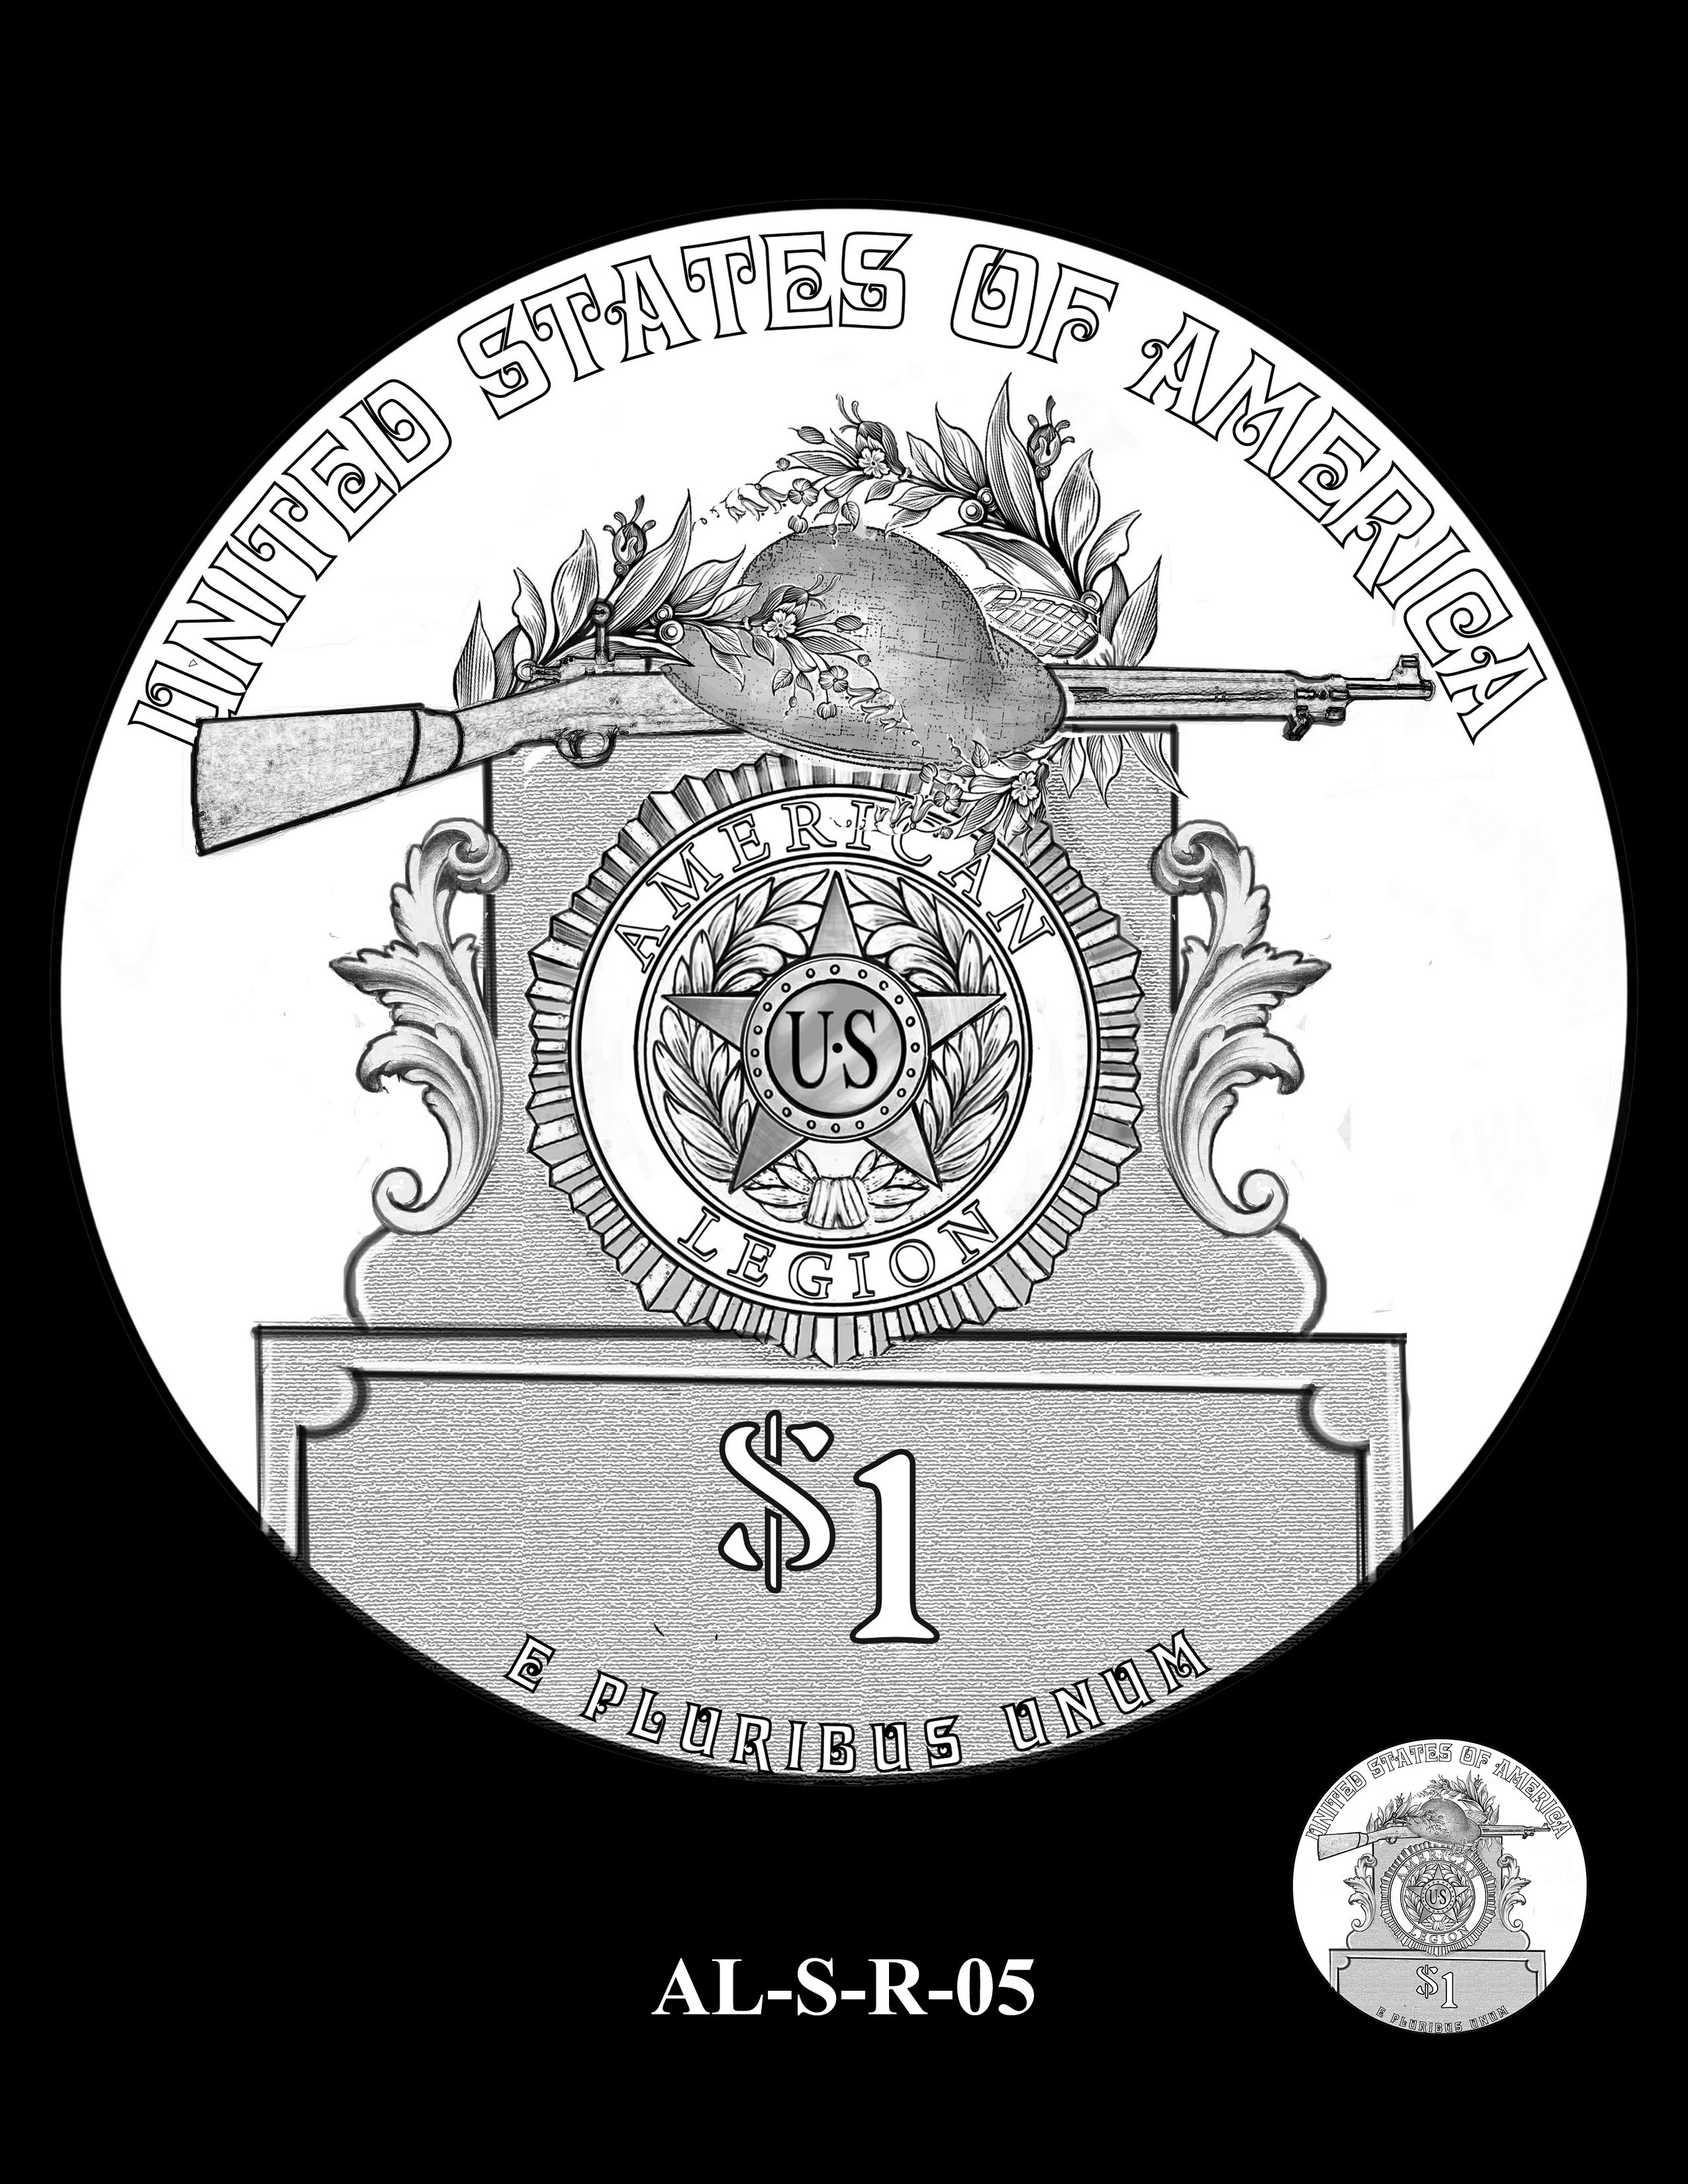 AL-S-R-05 -- 2019 American Legion 100th Anniversary Commemorative Coin Program - Silver Reverse